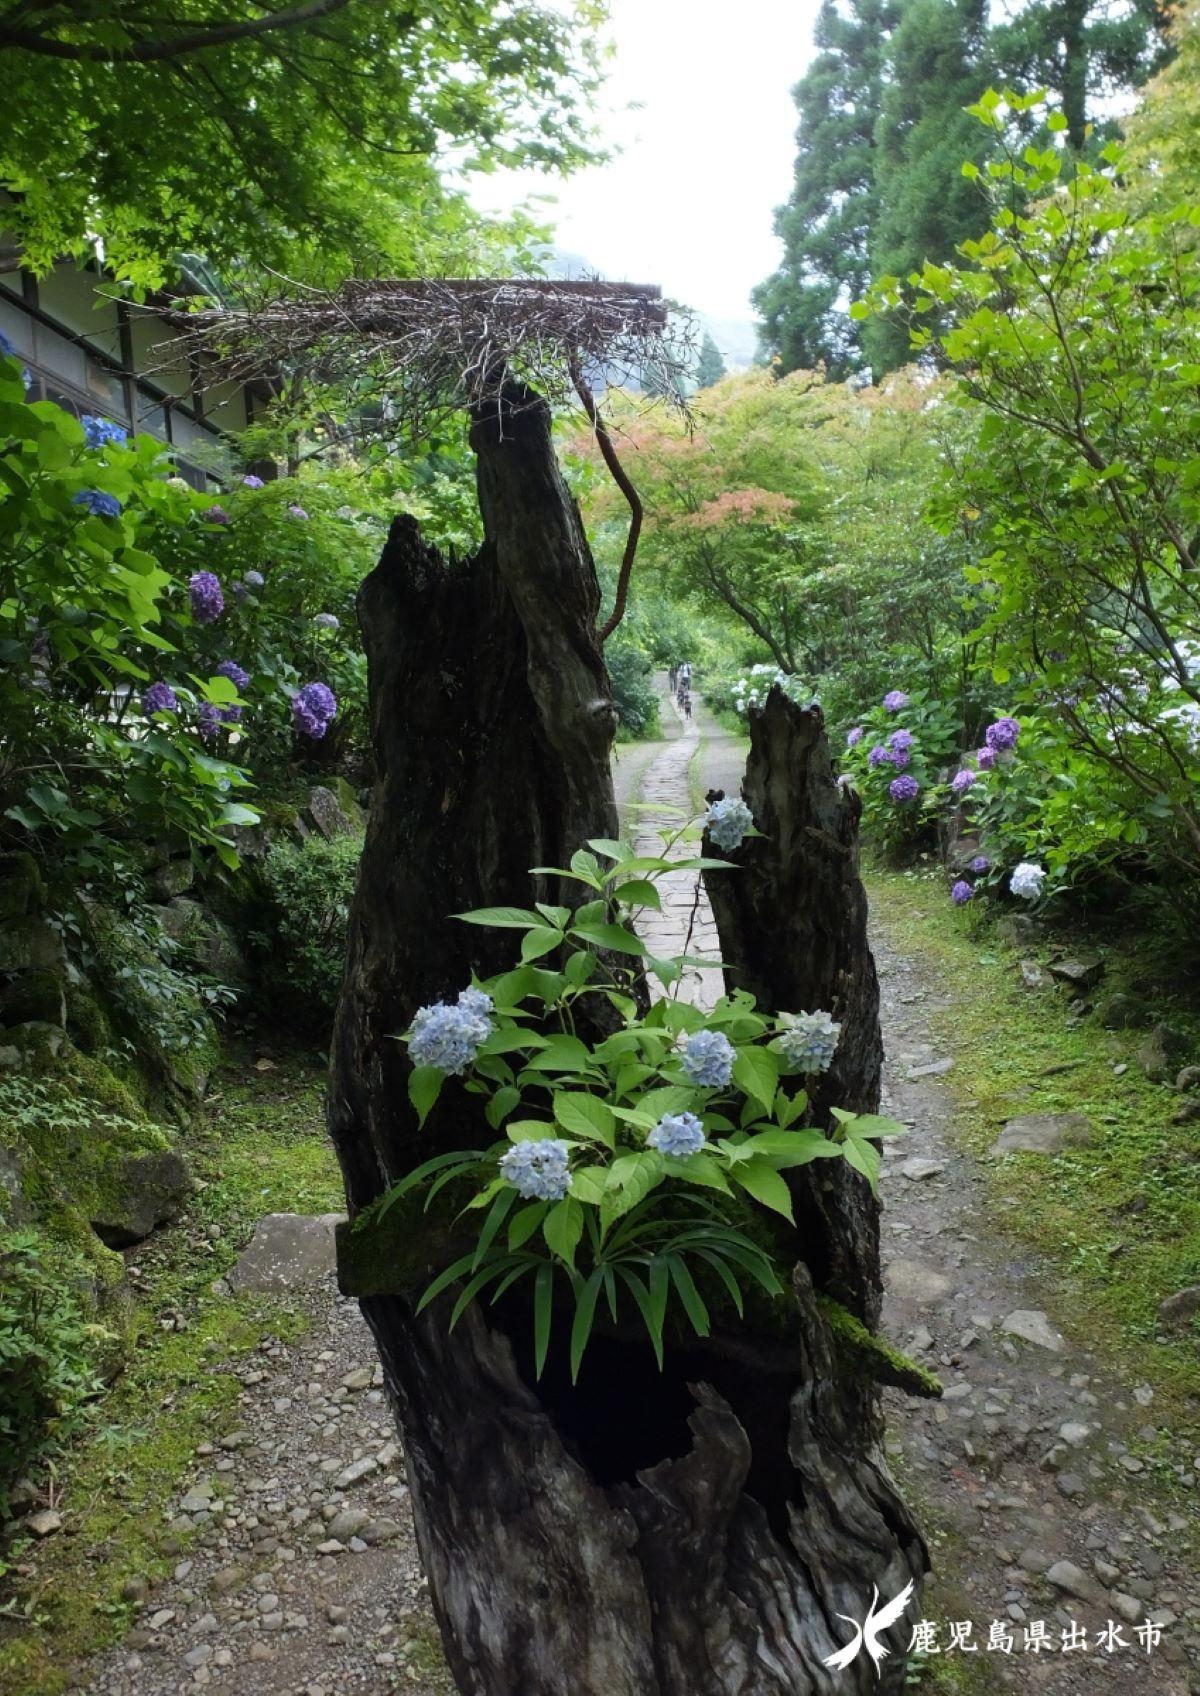 ดอกไม้ ฤดูร้อน อาจิไซ หุบเขาอาจิไซ ที่หมู่บ้านโทโนะโนะโนะ